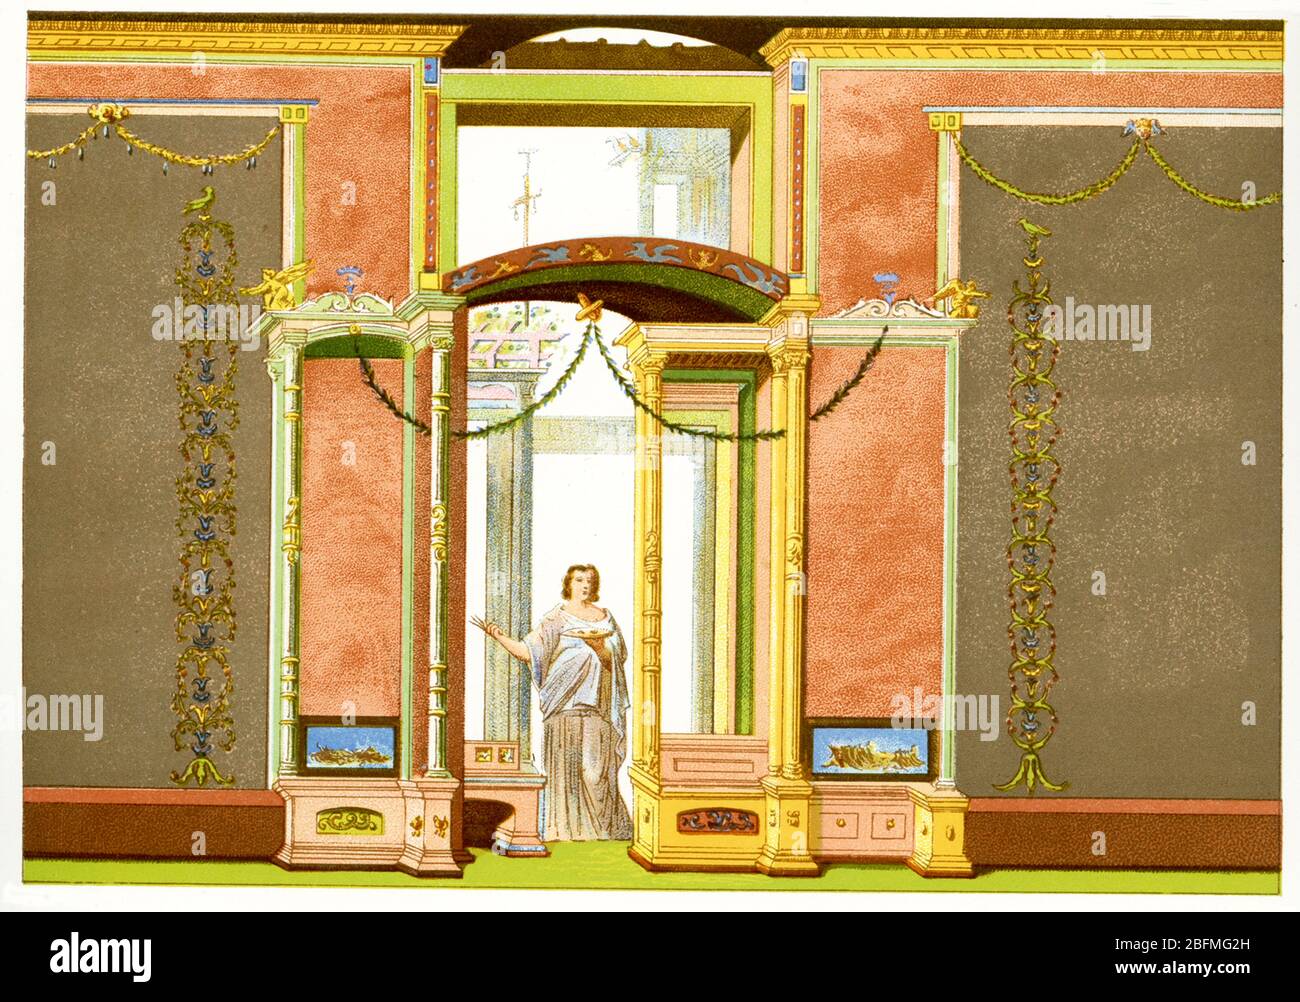 Cette illustration de la fin des années 1800 montre une vue reconstruite de la décoration de mur romain qui a été trouvée à Pompéi, une ville au sud de Rome sur la baie de Naples qui a été détruite dans l'éruption de Mt. Vésuve. Banque D'Images